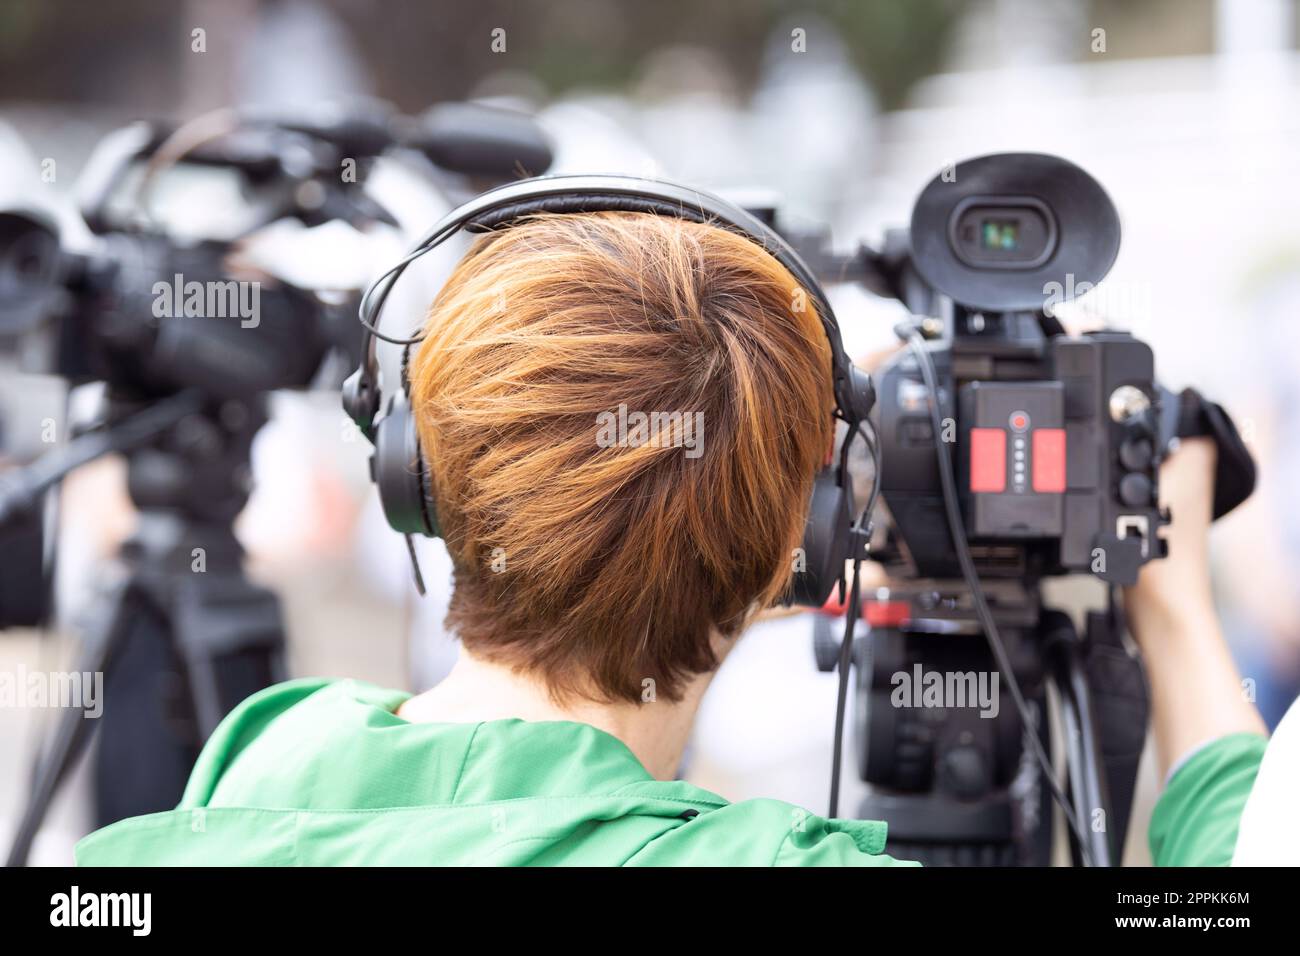 Kameramann bei der Arbeit während einer Pressekonferenz oder Medienveranstaltung mit Videokamera Stockfoto